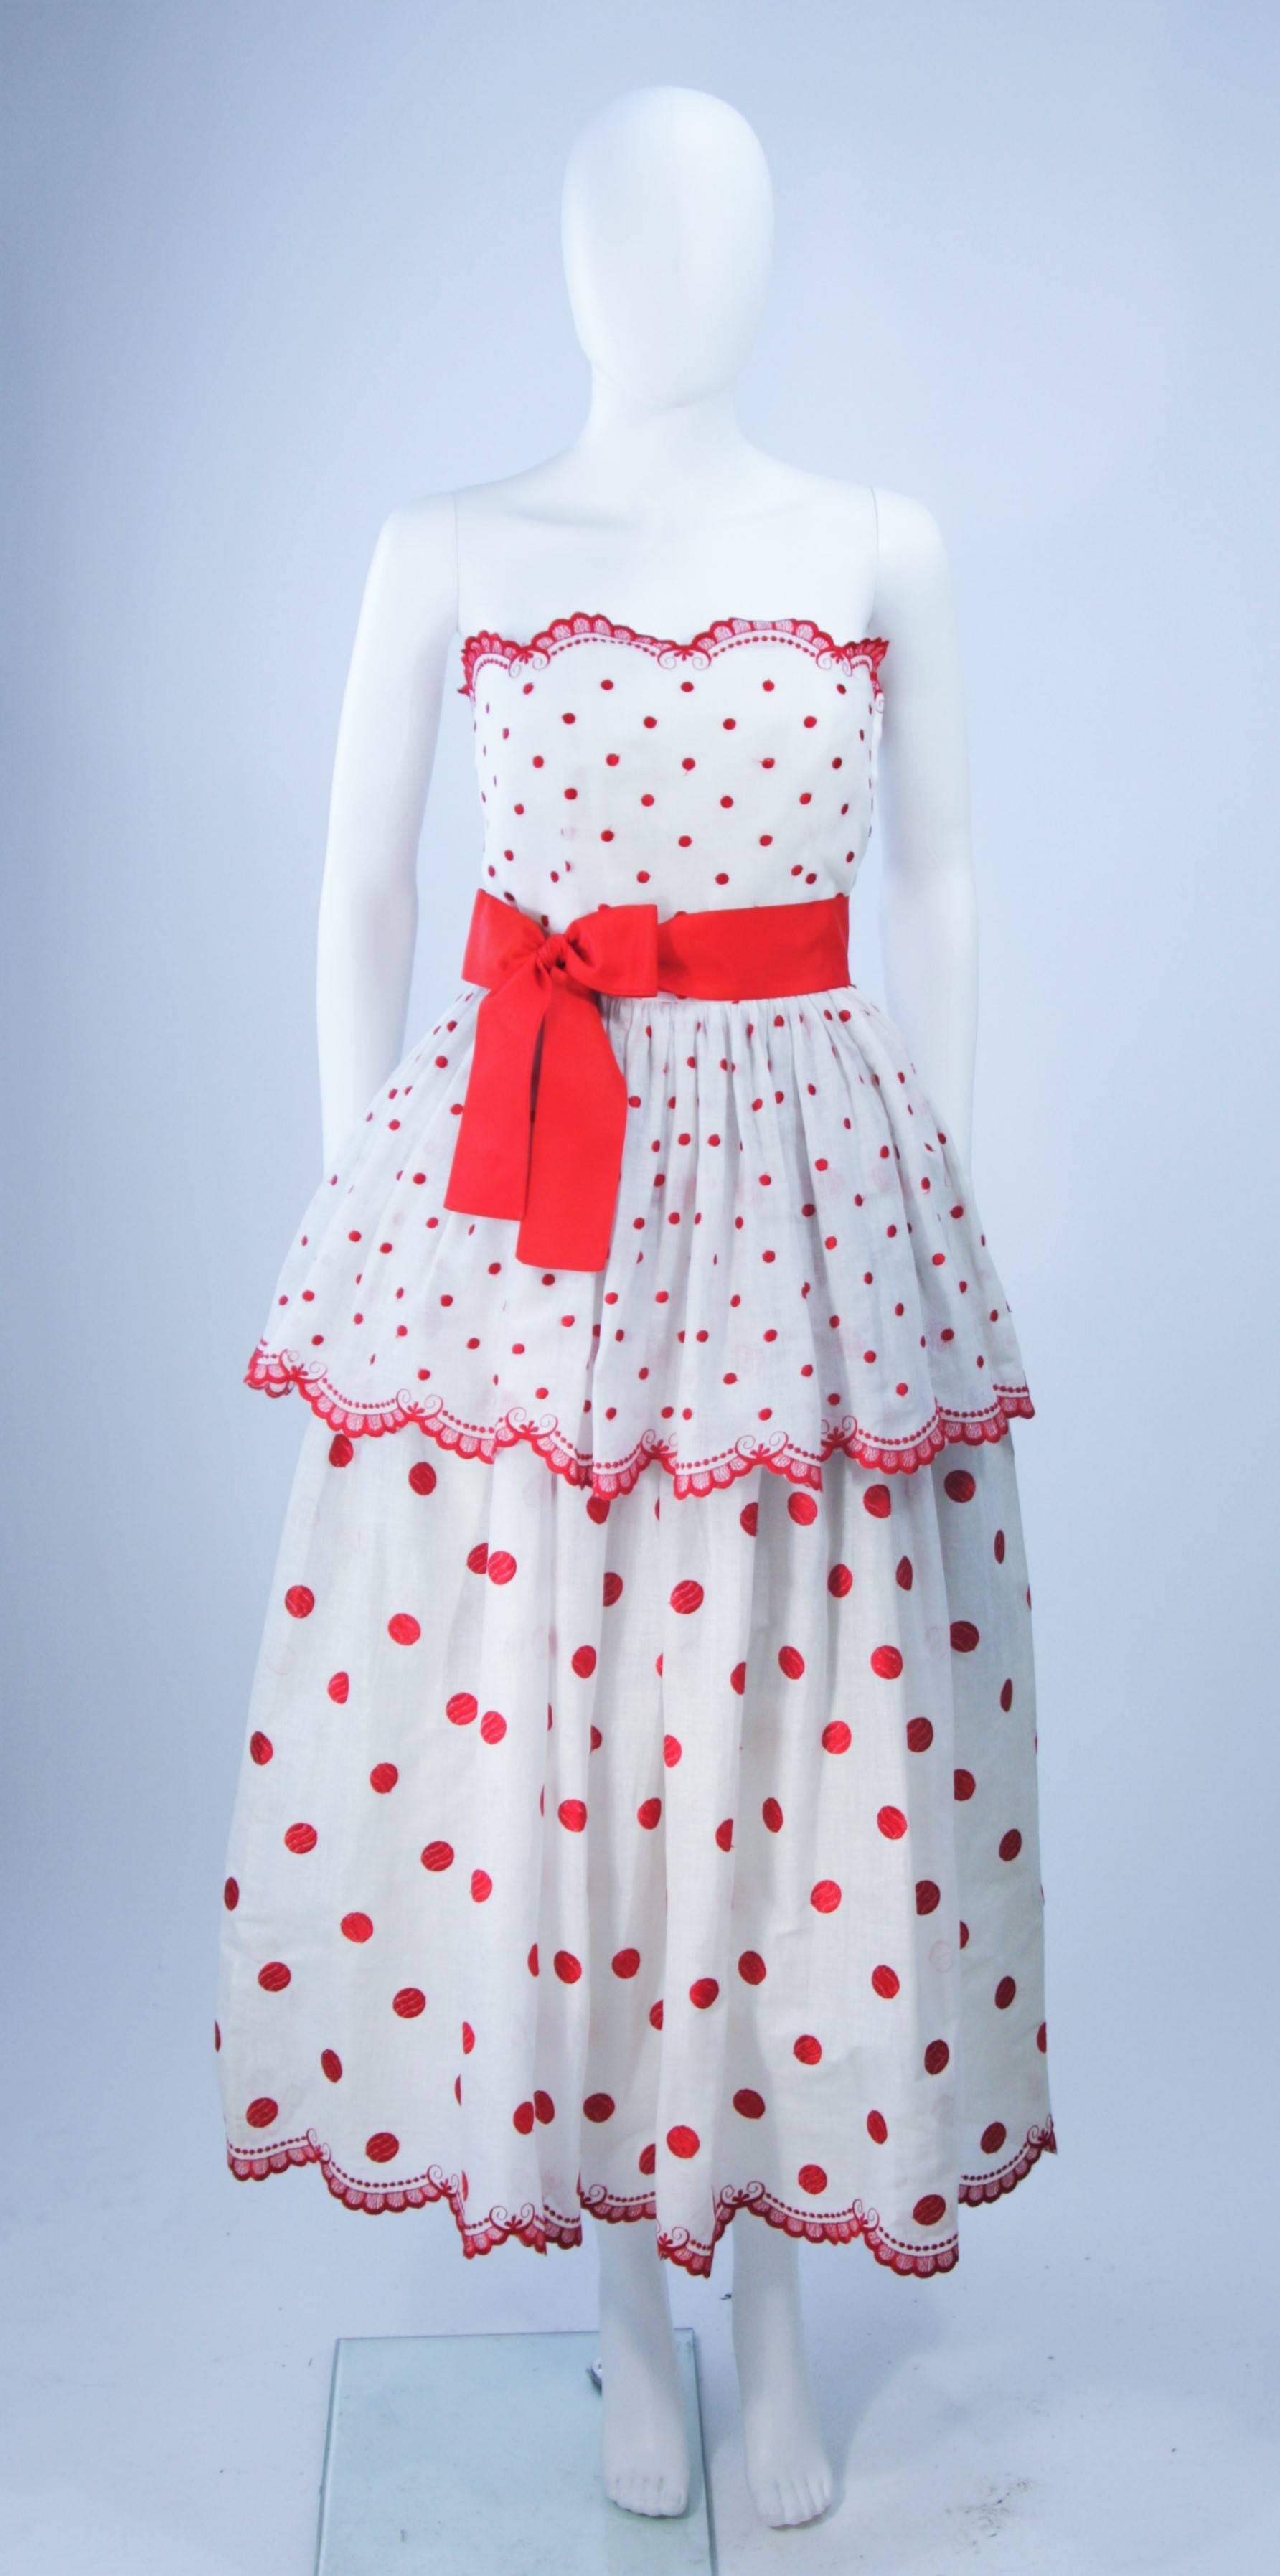  Cette robe Alberto Capraro est composée d'un tissu blanc brodé de rouge. Le design à plusieurs niveaux présente des bordures festonnées. Il y a une fermeture à glissière et une ceinture en ruban. Vintage, en excellent état. 

**Veuillez croiser